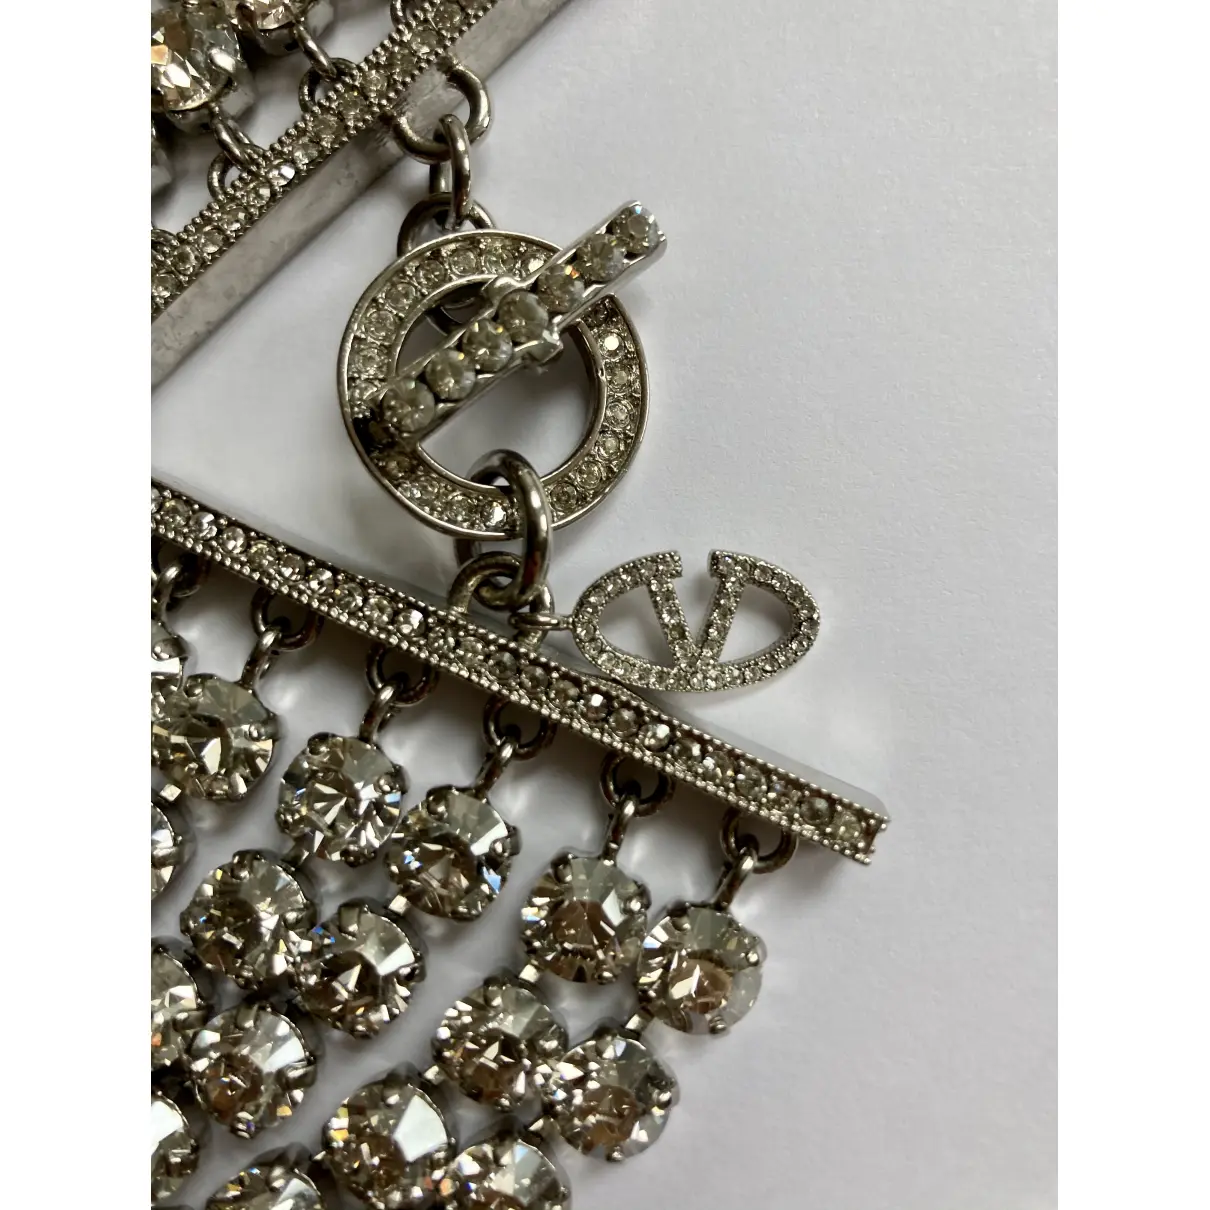 Buy Valentino Garavani Crystal necklace online